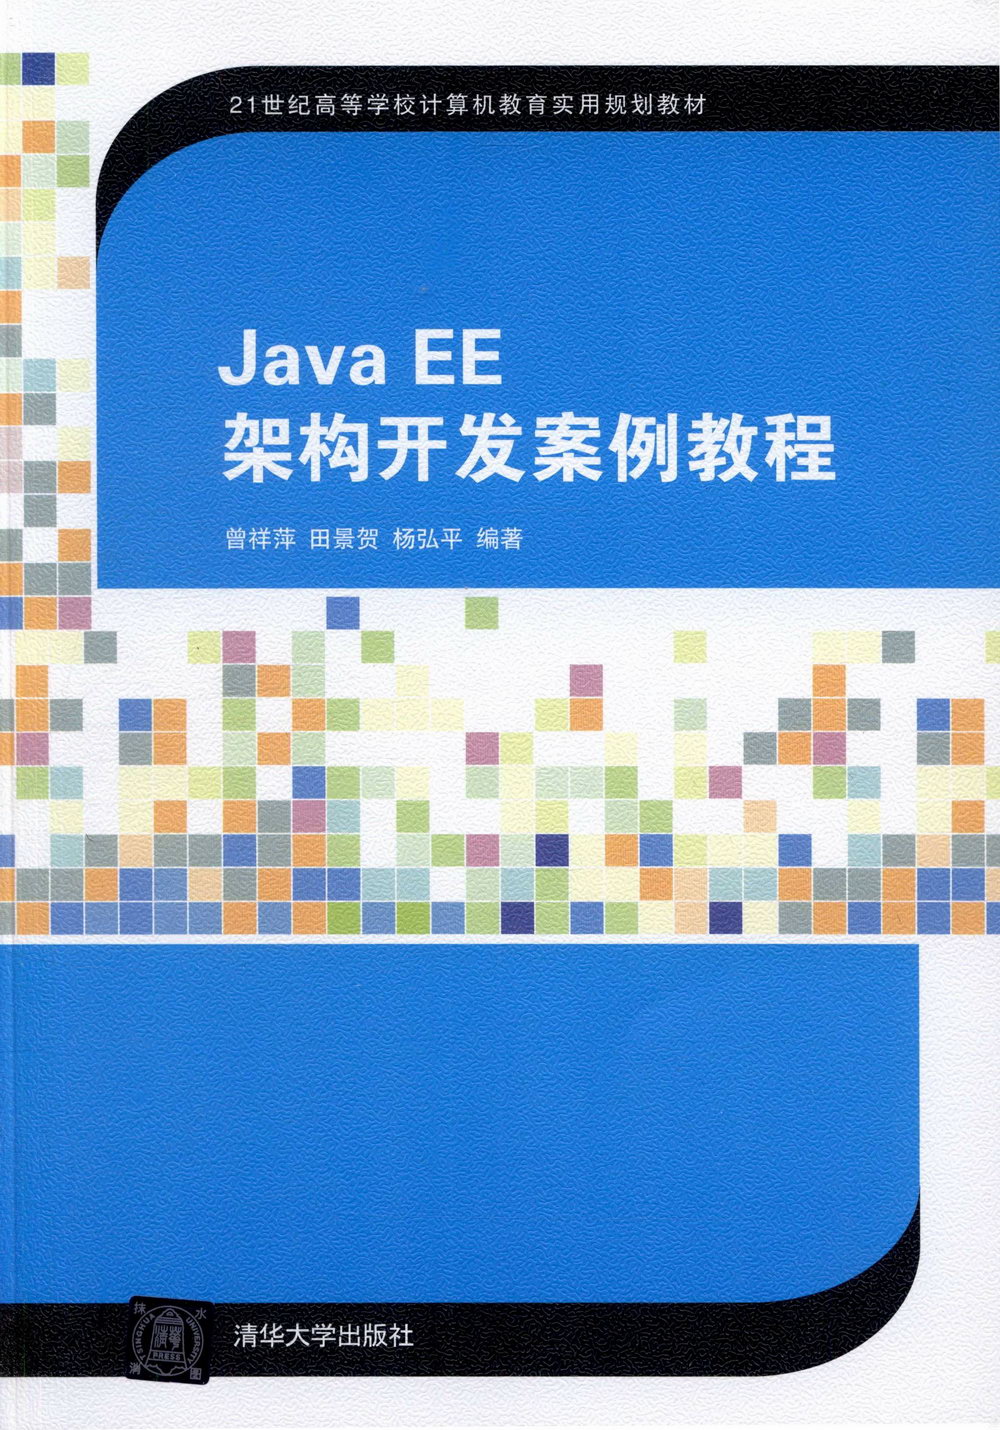 Java EE架構開發案例教程